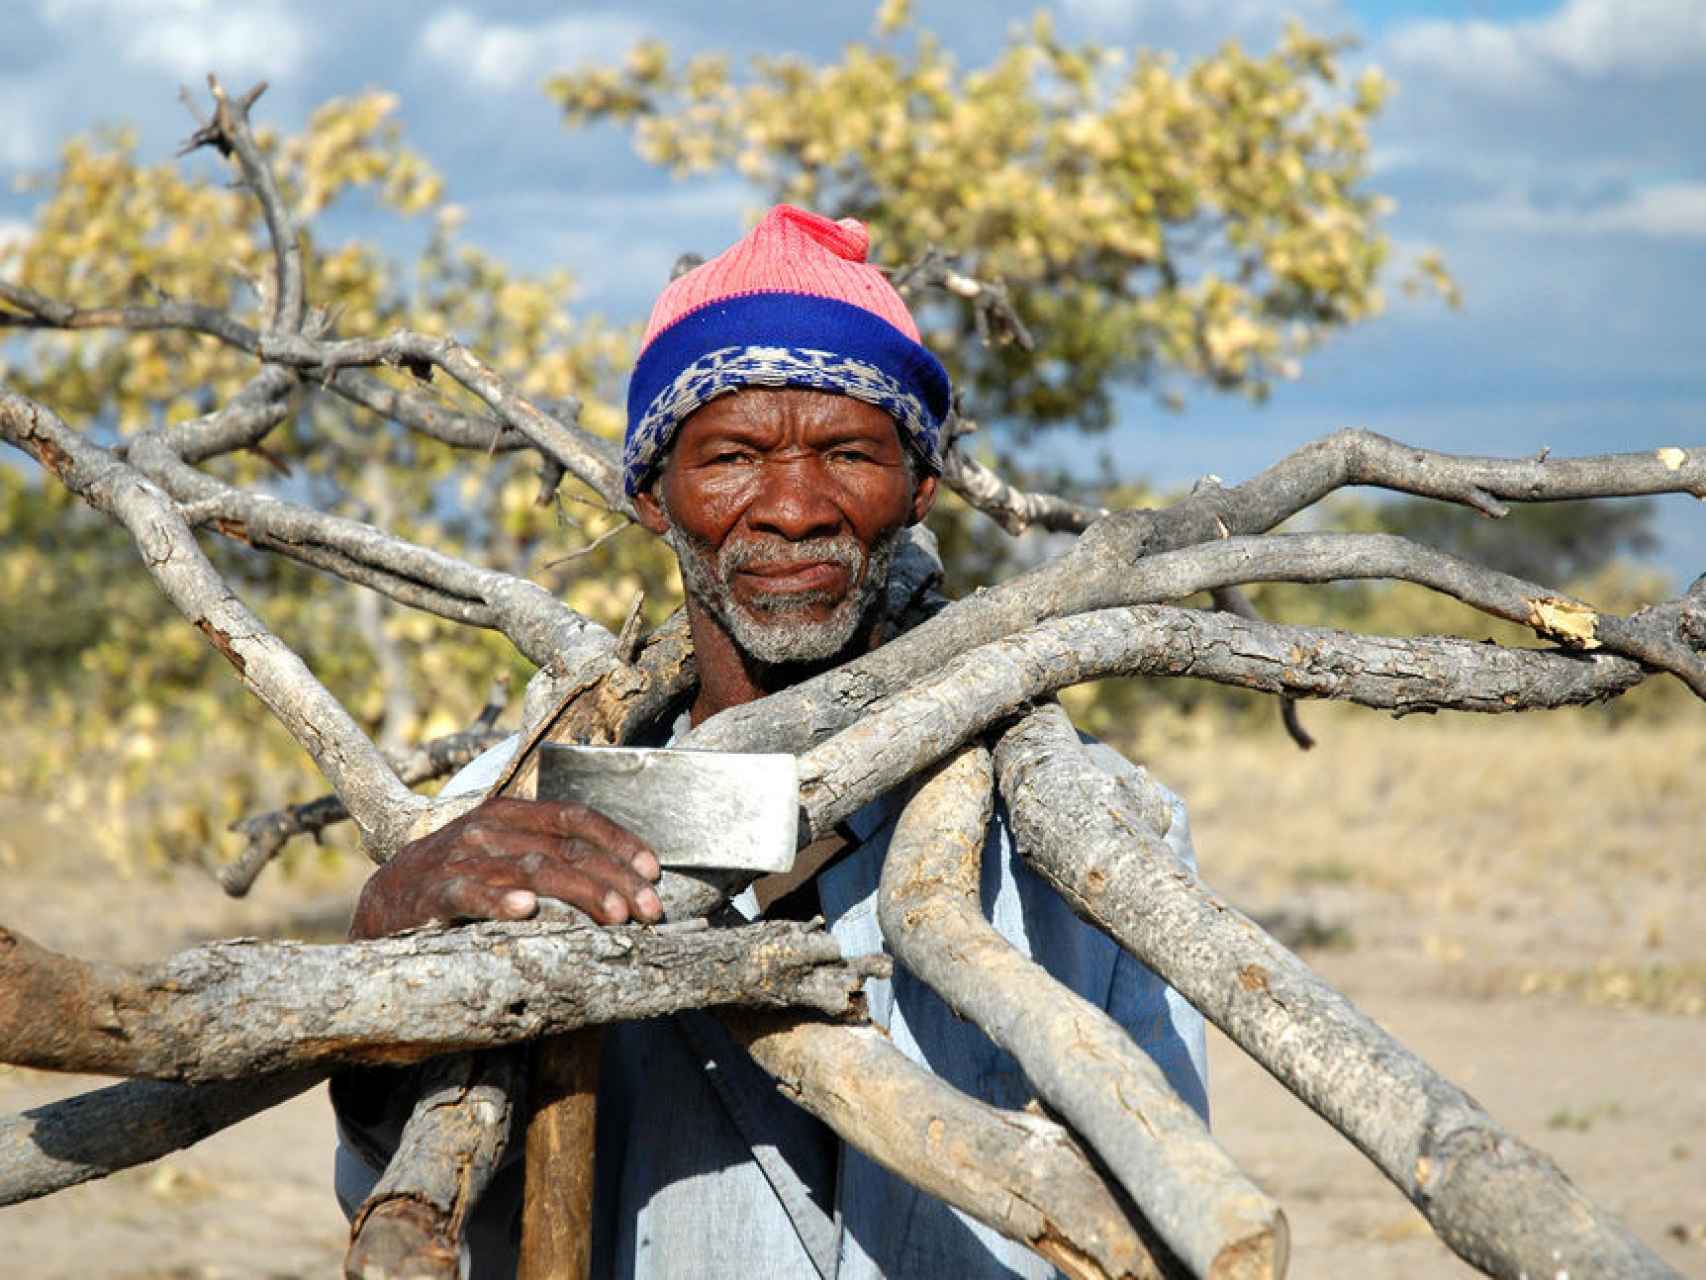 Unos 40.000 bosquimanos viven en Botsuana.